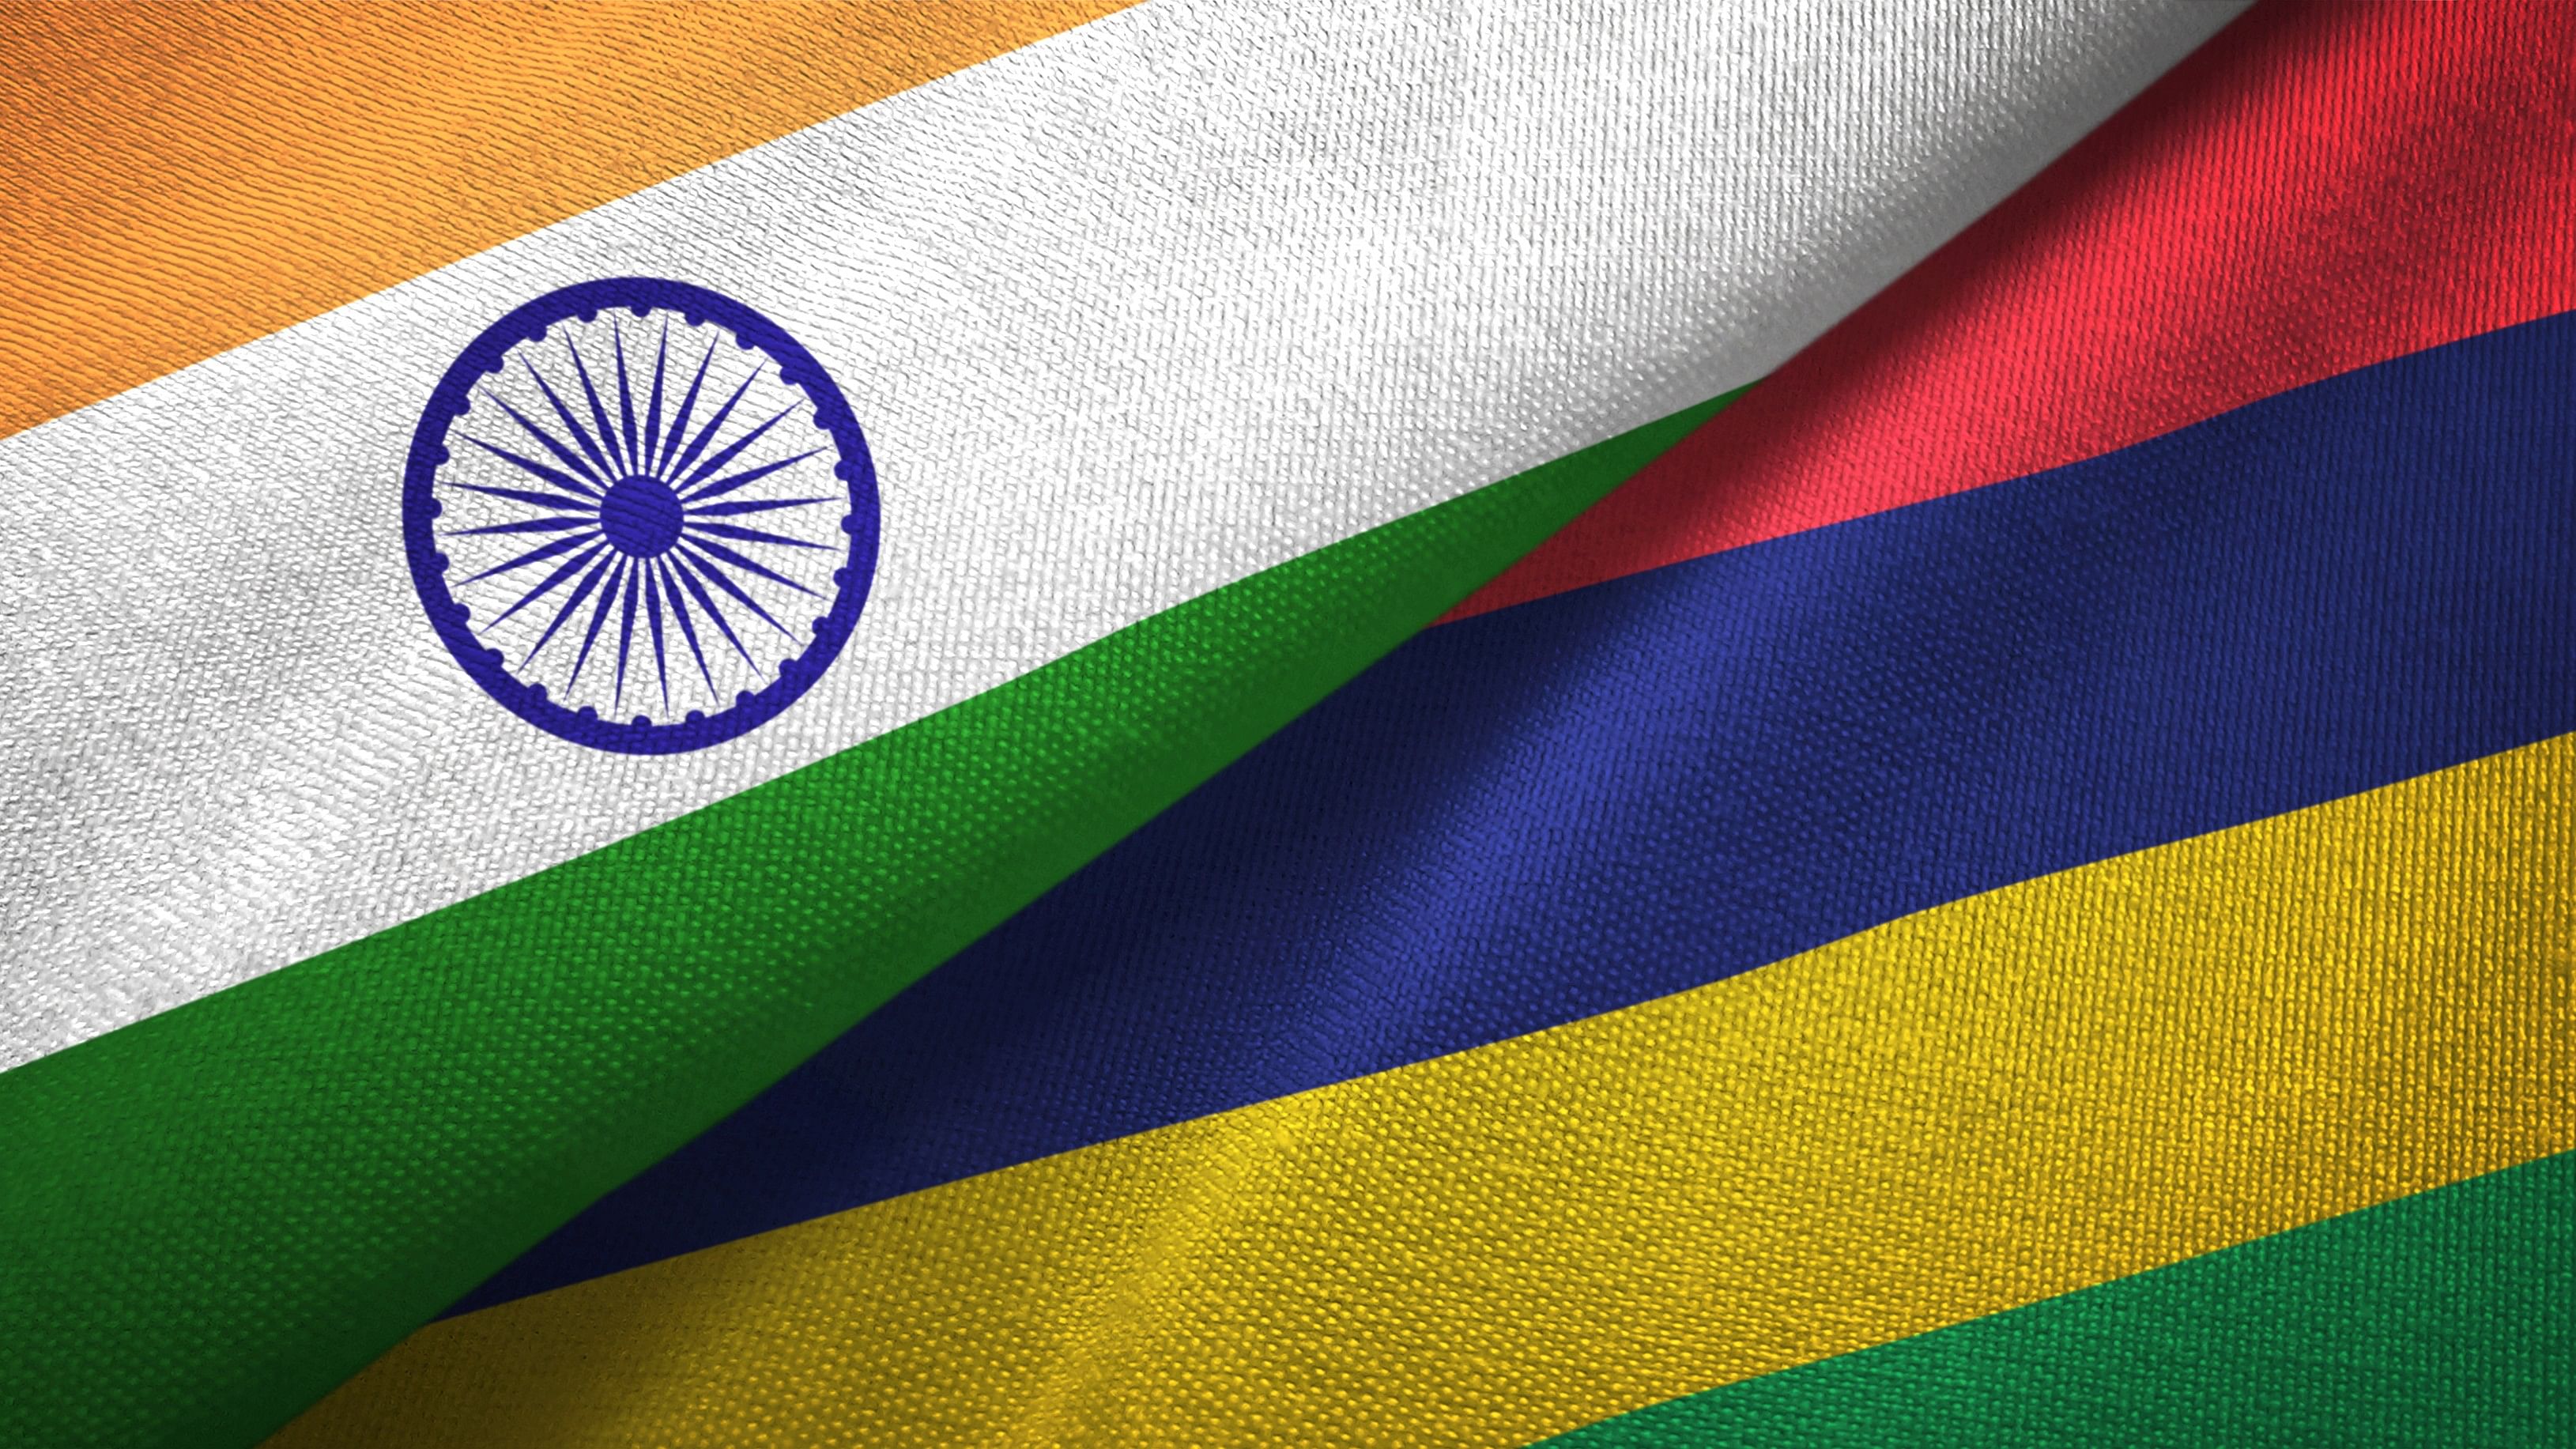 <div class="paragraphs"><p>Mauritius and India flags (Representative image)</p></div>